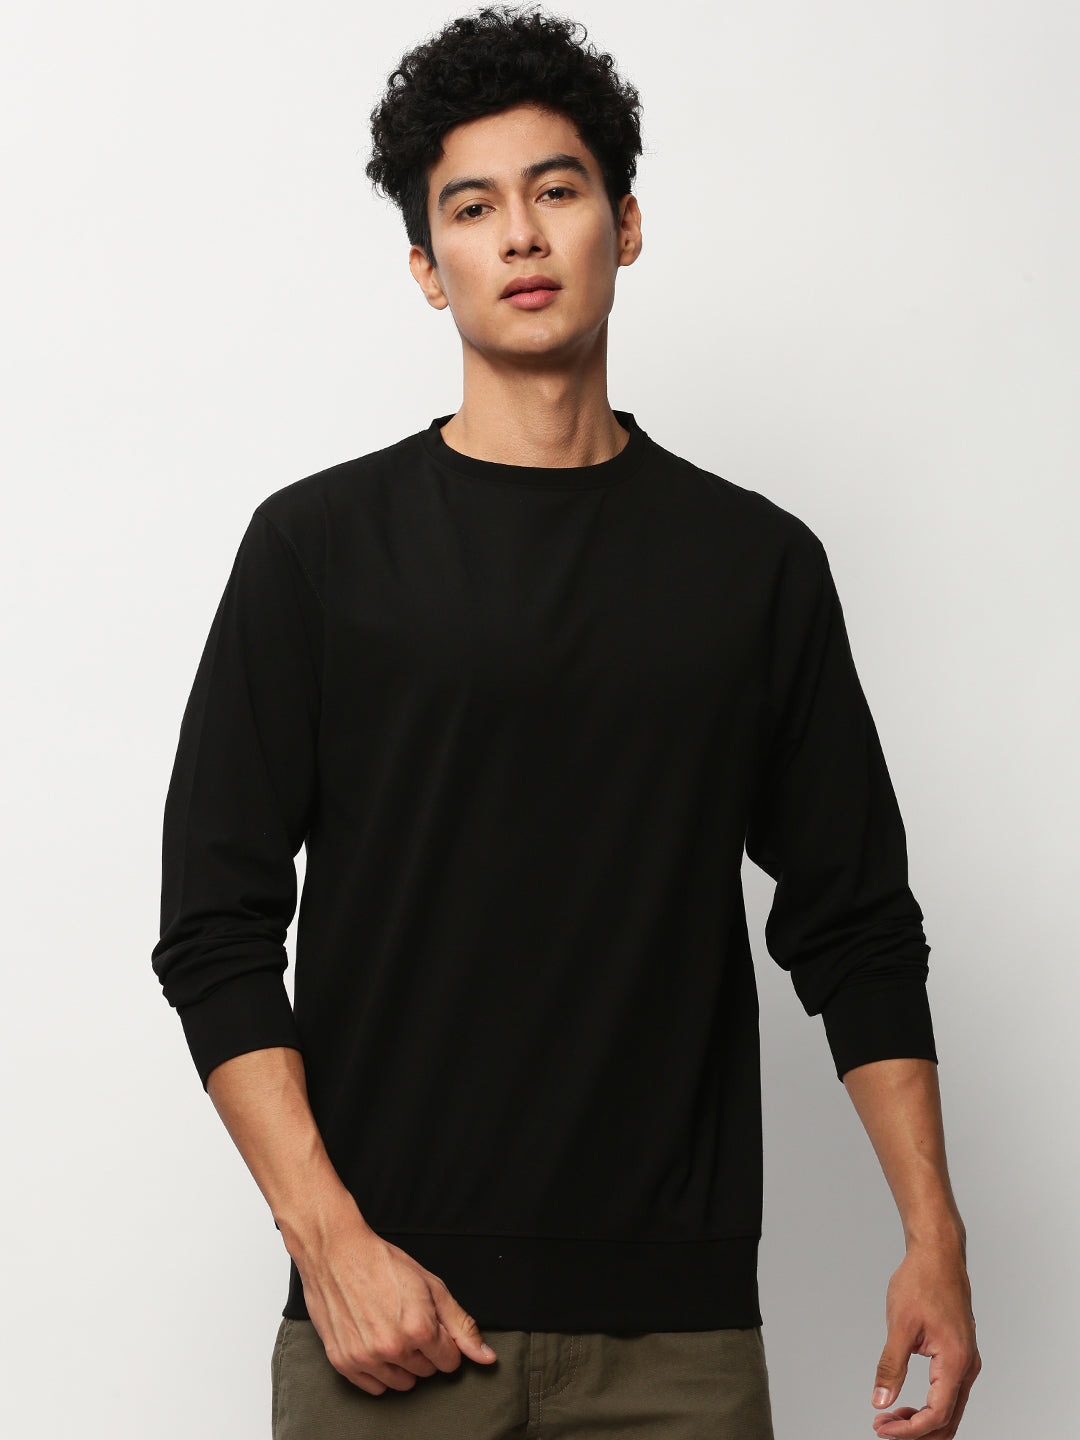 Men Black Solid Casual Sweatshirts